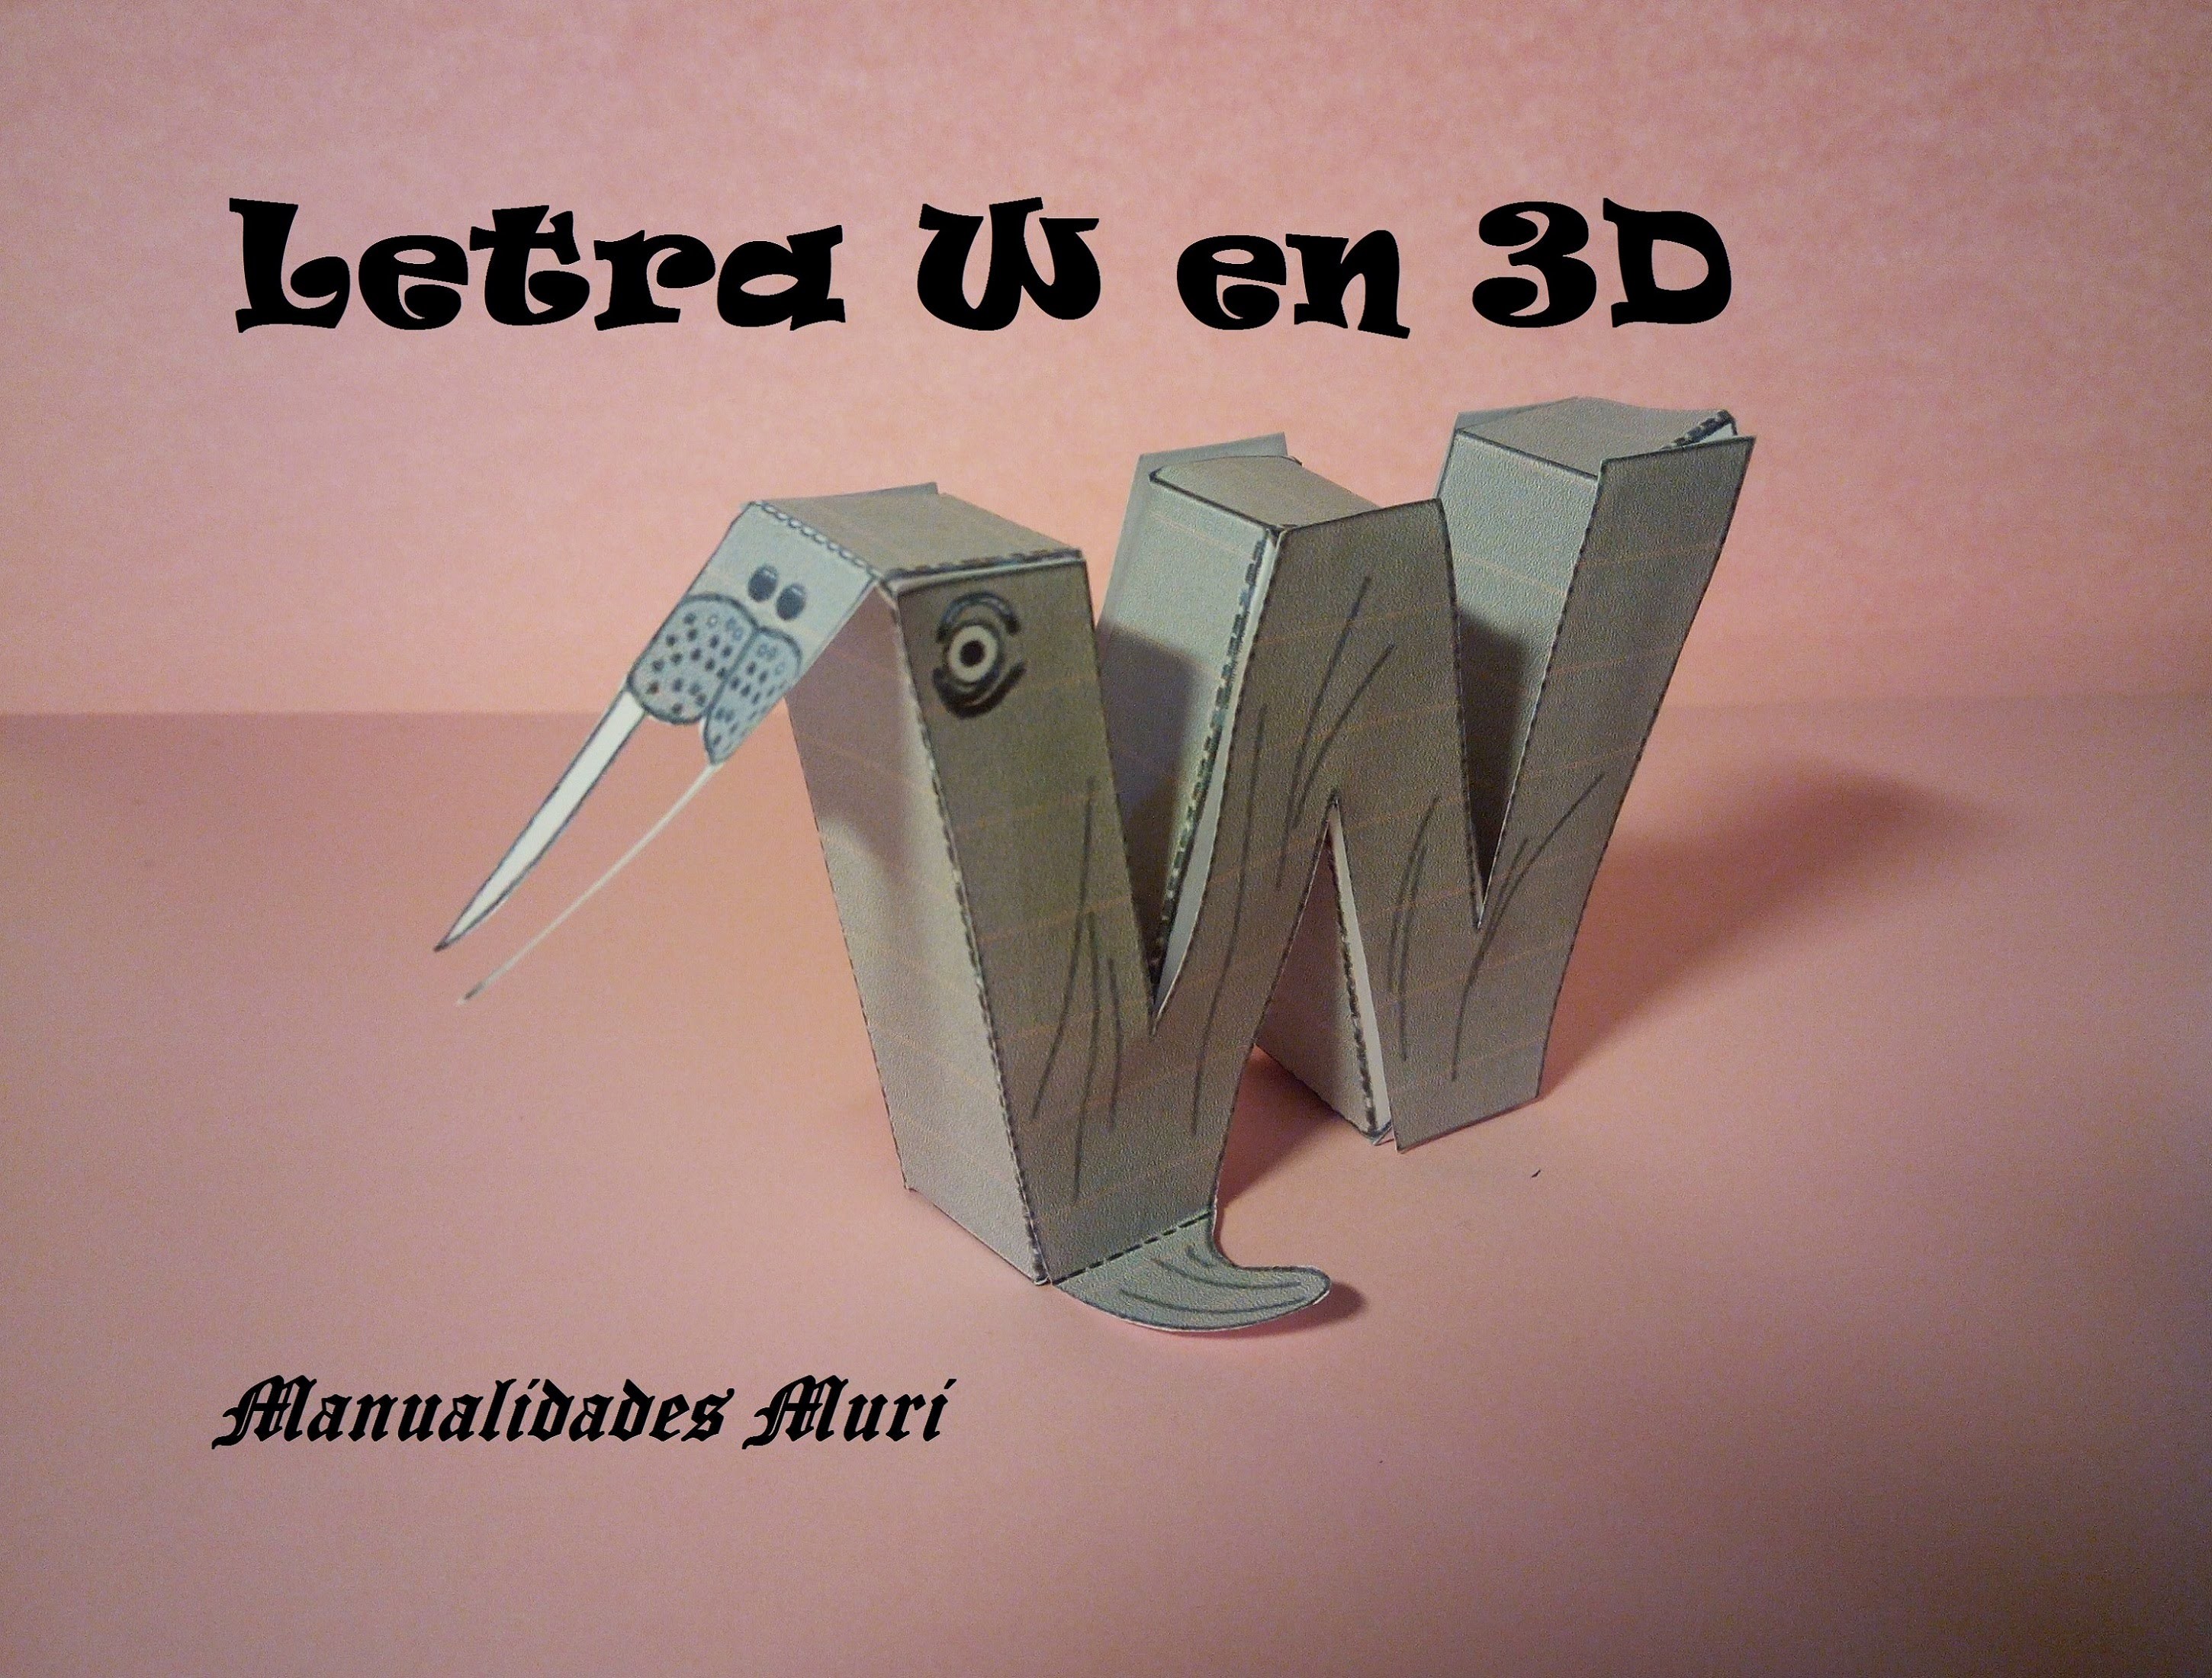 Manualidades. Letra W en 3D. PaperCraft. Abecedario